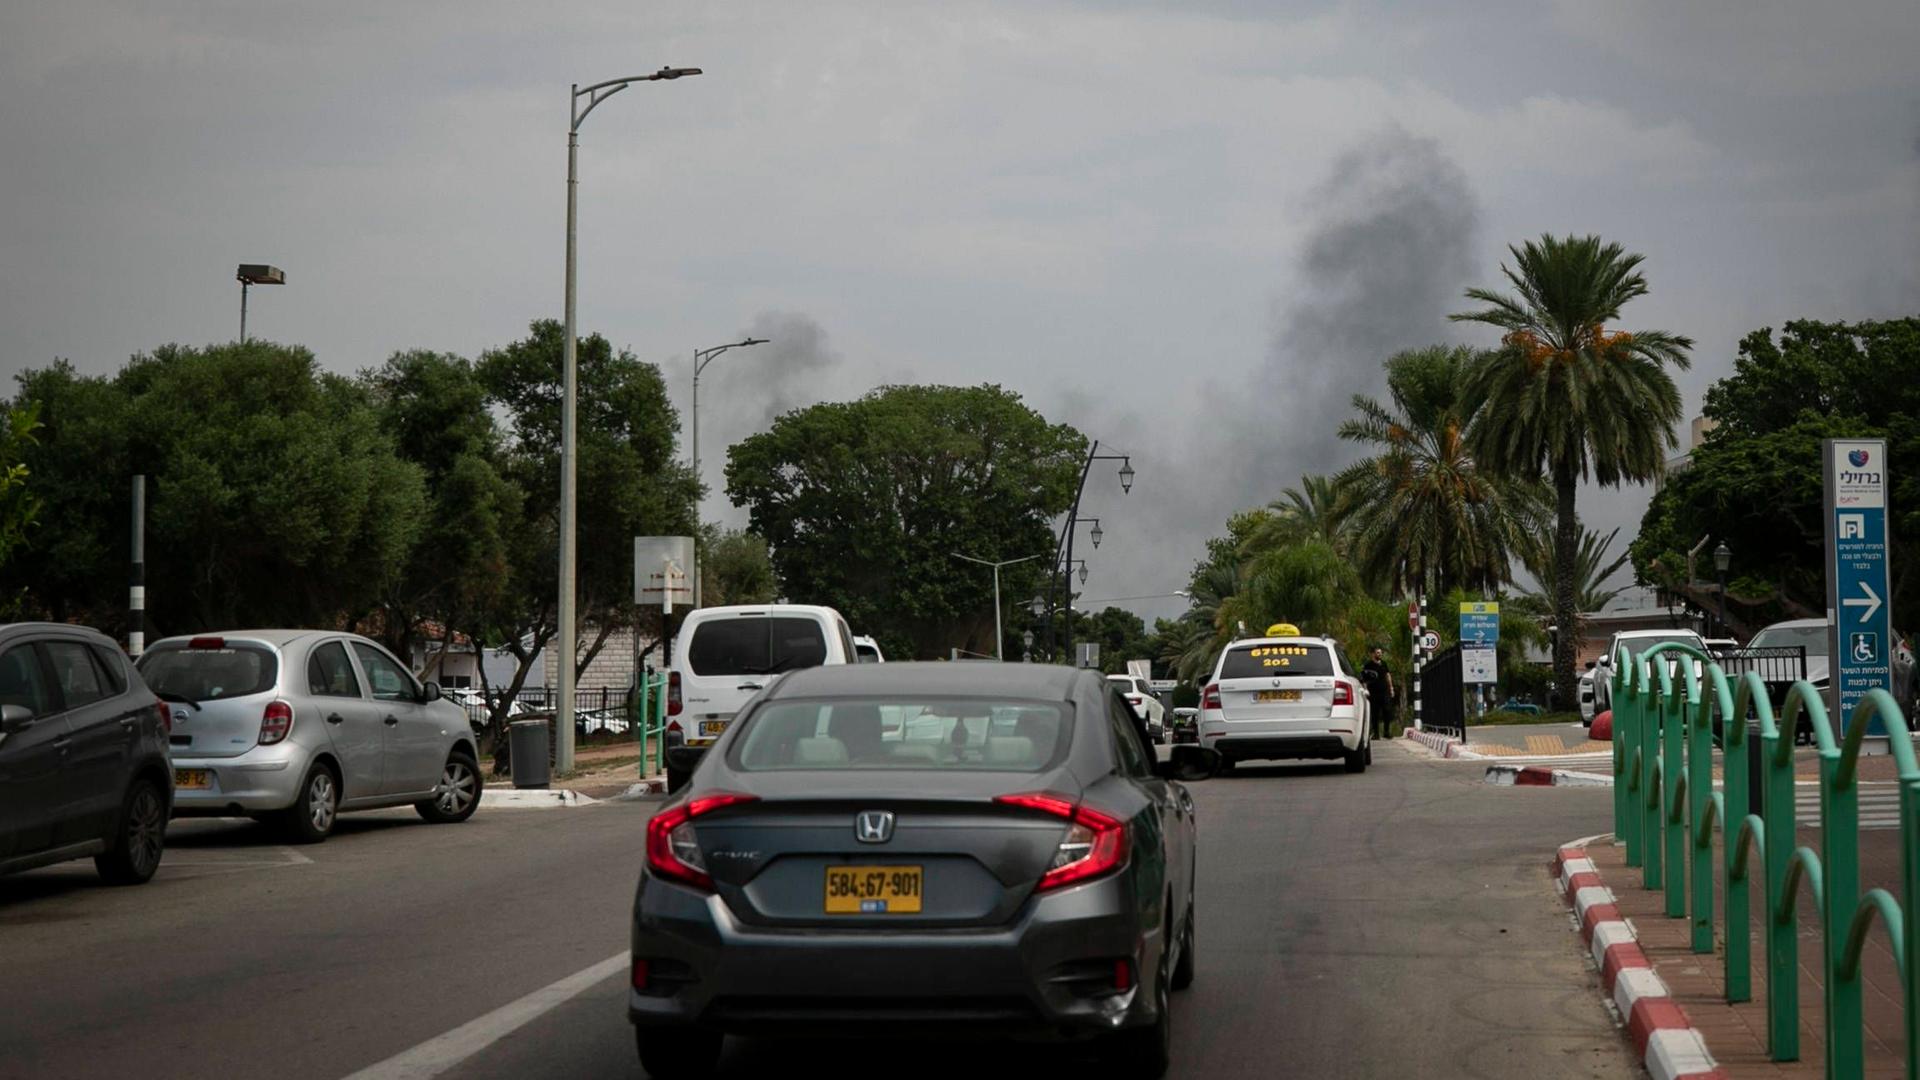 Blick auf eine Straße mit Autos. Am Horizont sieht man eine Rauchwolke.